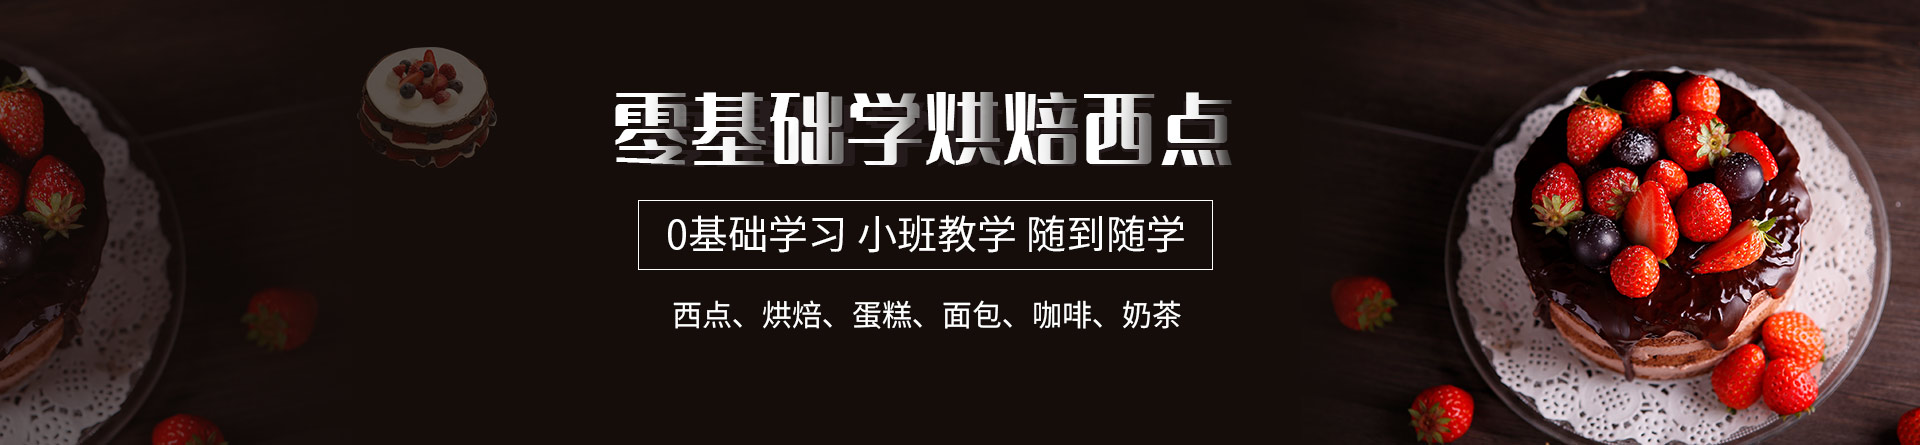 武汉熳点烘焙培训学校 横幅广告